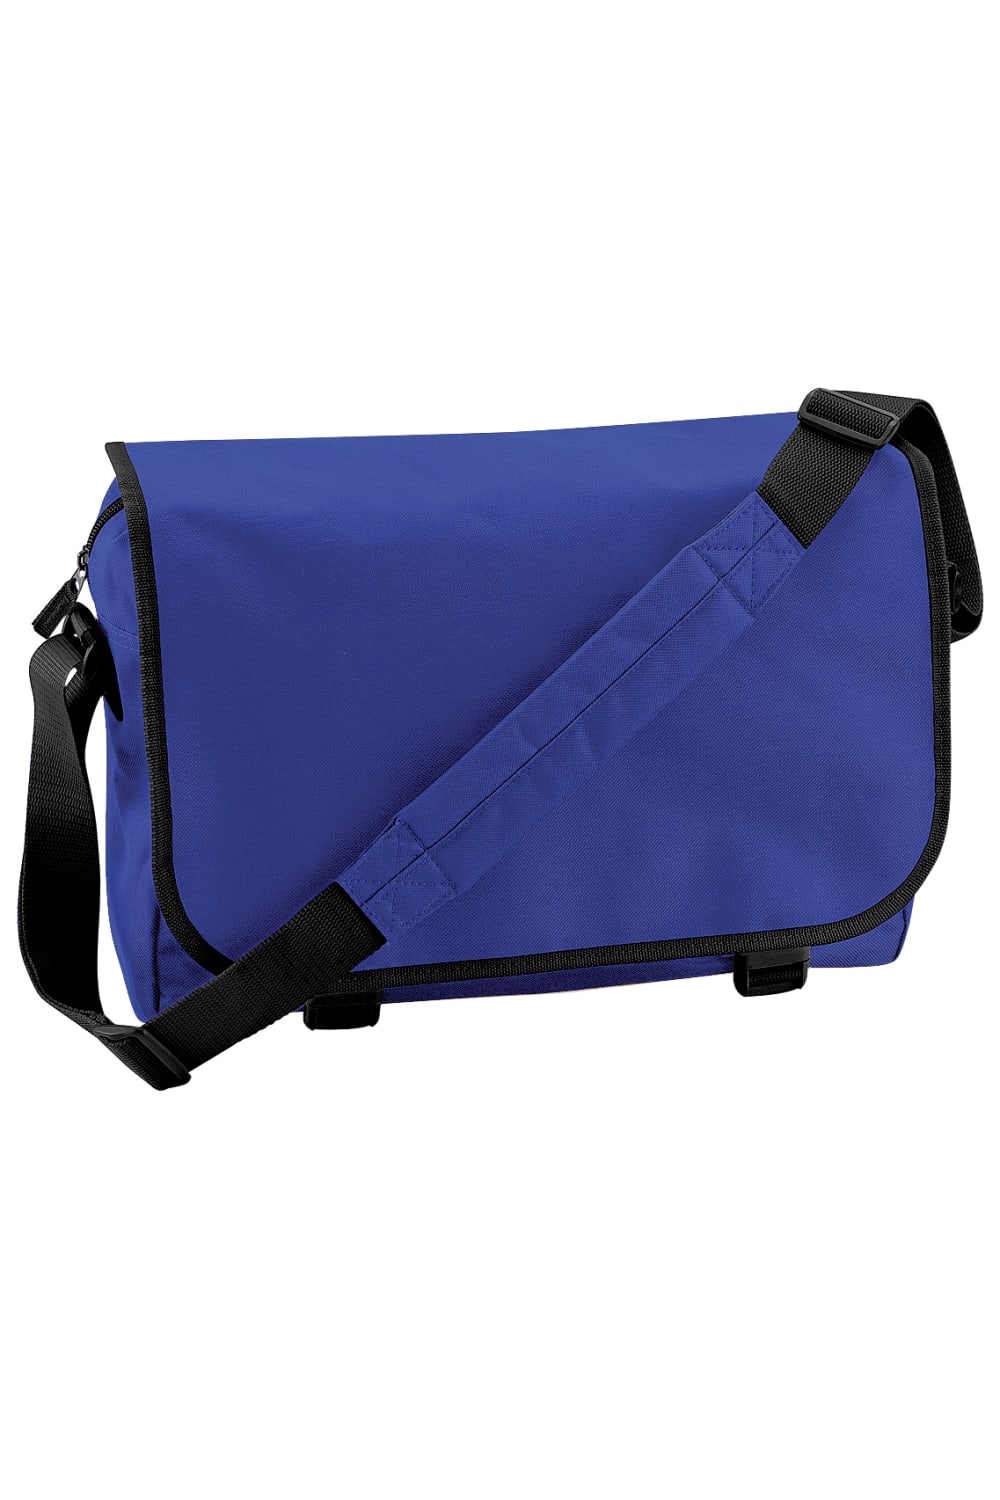 Adjustable Messenger Bag 11 Liters, Pack Of 2  -Bright Royal